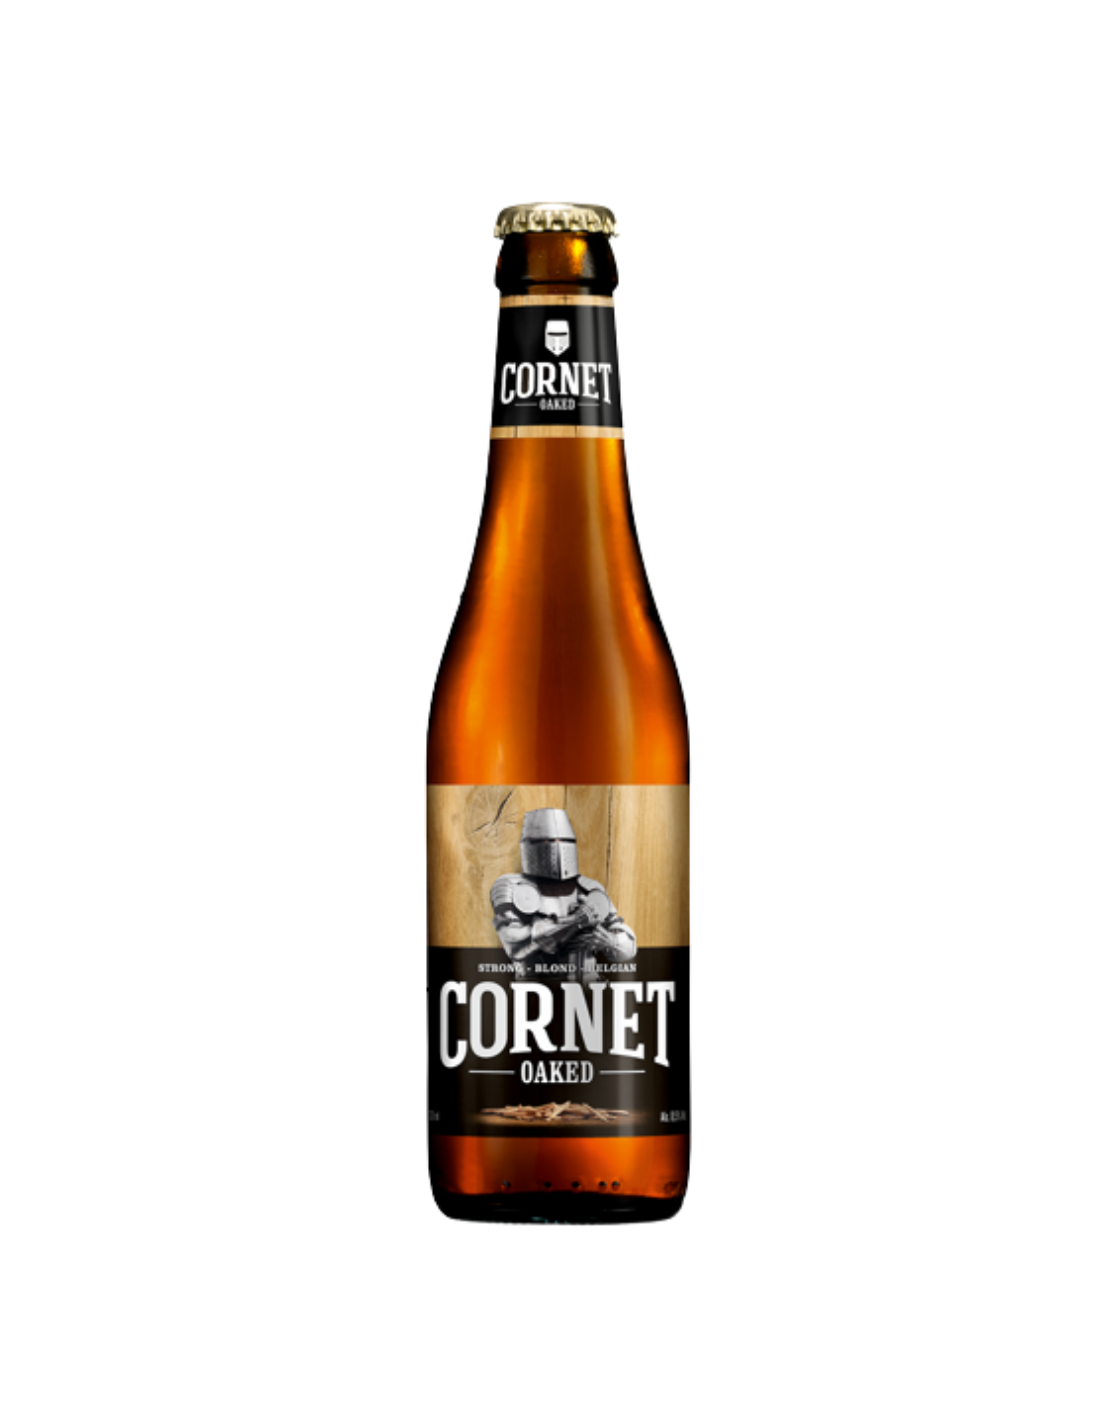 Bere blonda Cornet Oaked, 8.5% alc., 0.33L, sticla, Belgia